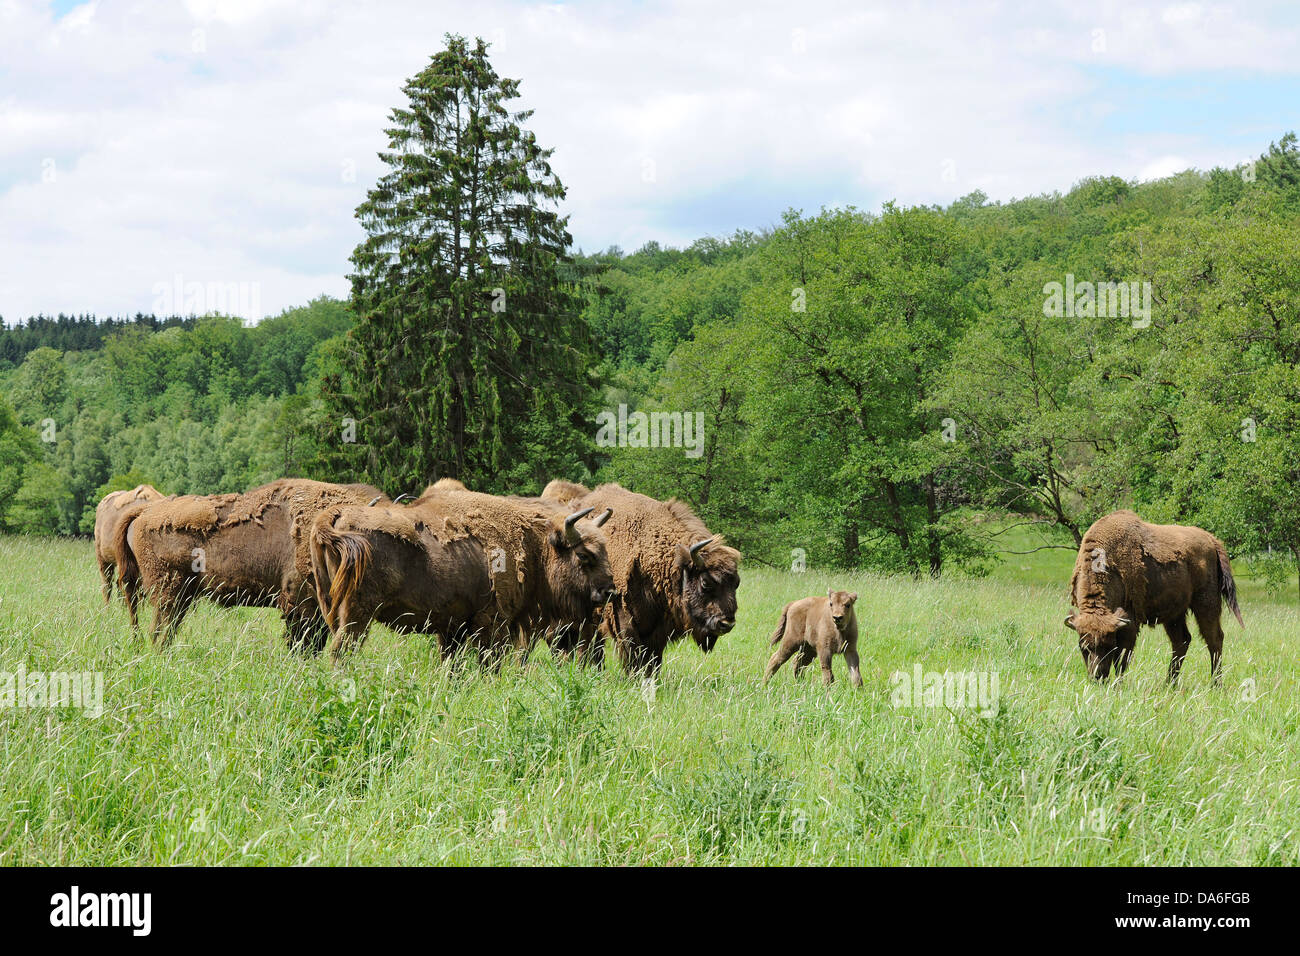 Herd of Wisent or European Bison (Bison bonasus), captive Stock Photo